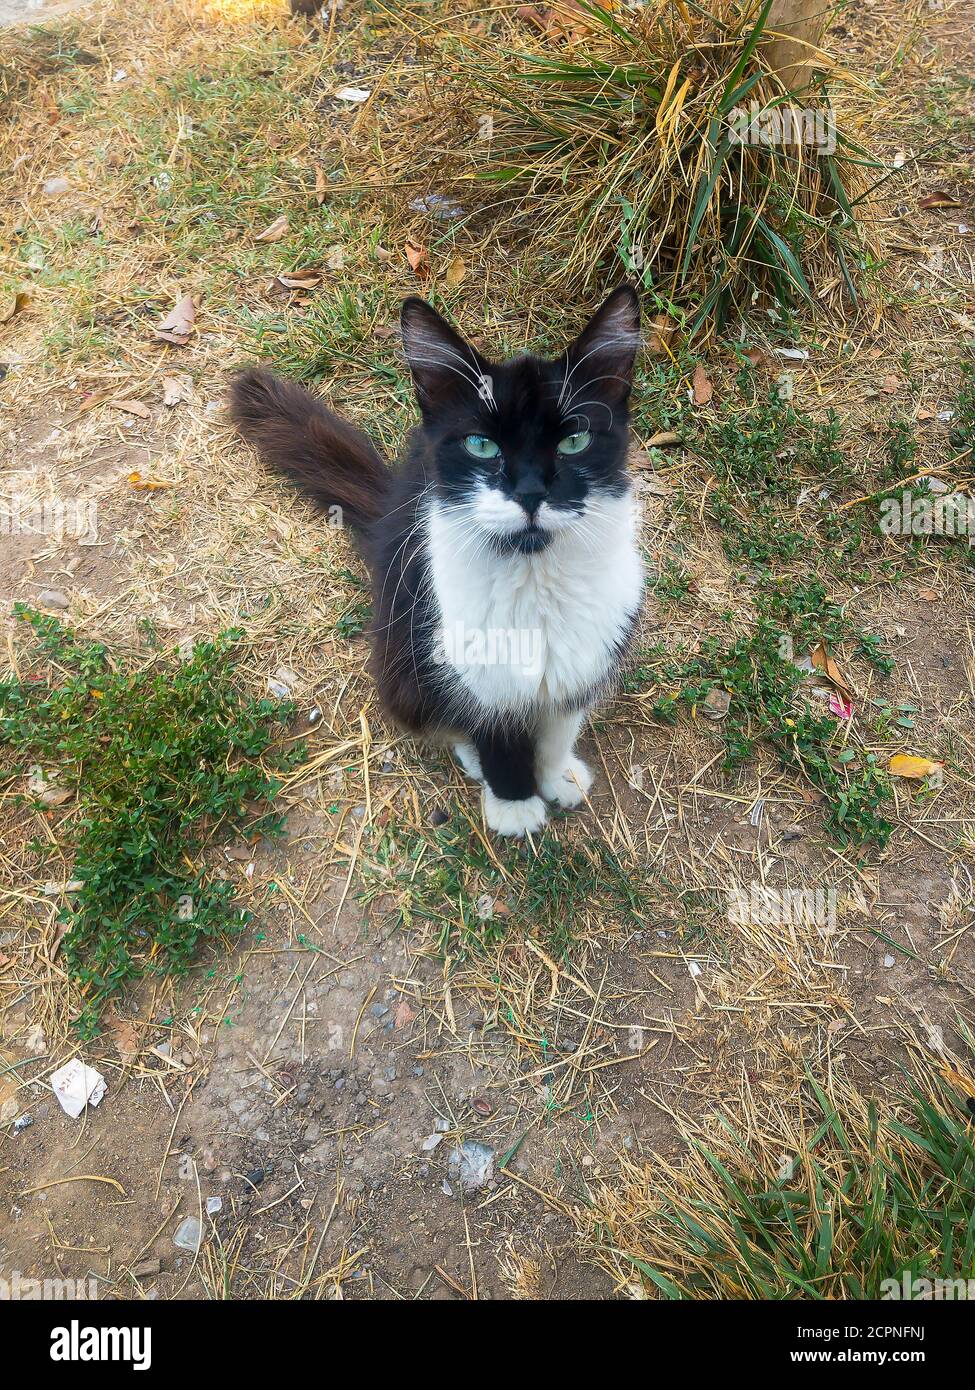 Schwarz-weiße, haarige Katze mit grünen Augen und langen weißen Augenbrauen sitzt im Gras und schaut in die Kamera Stockfoto